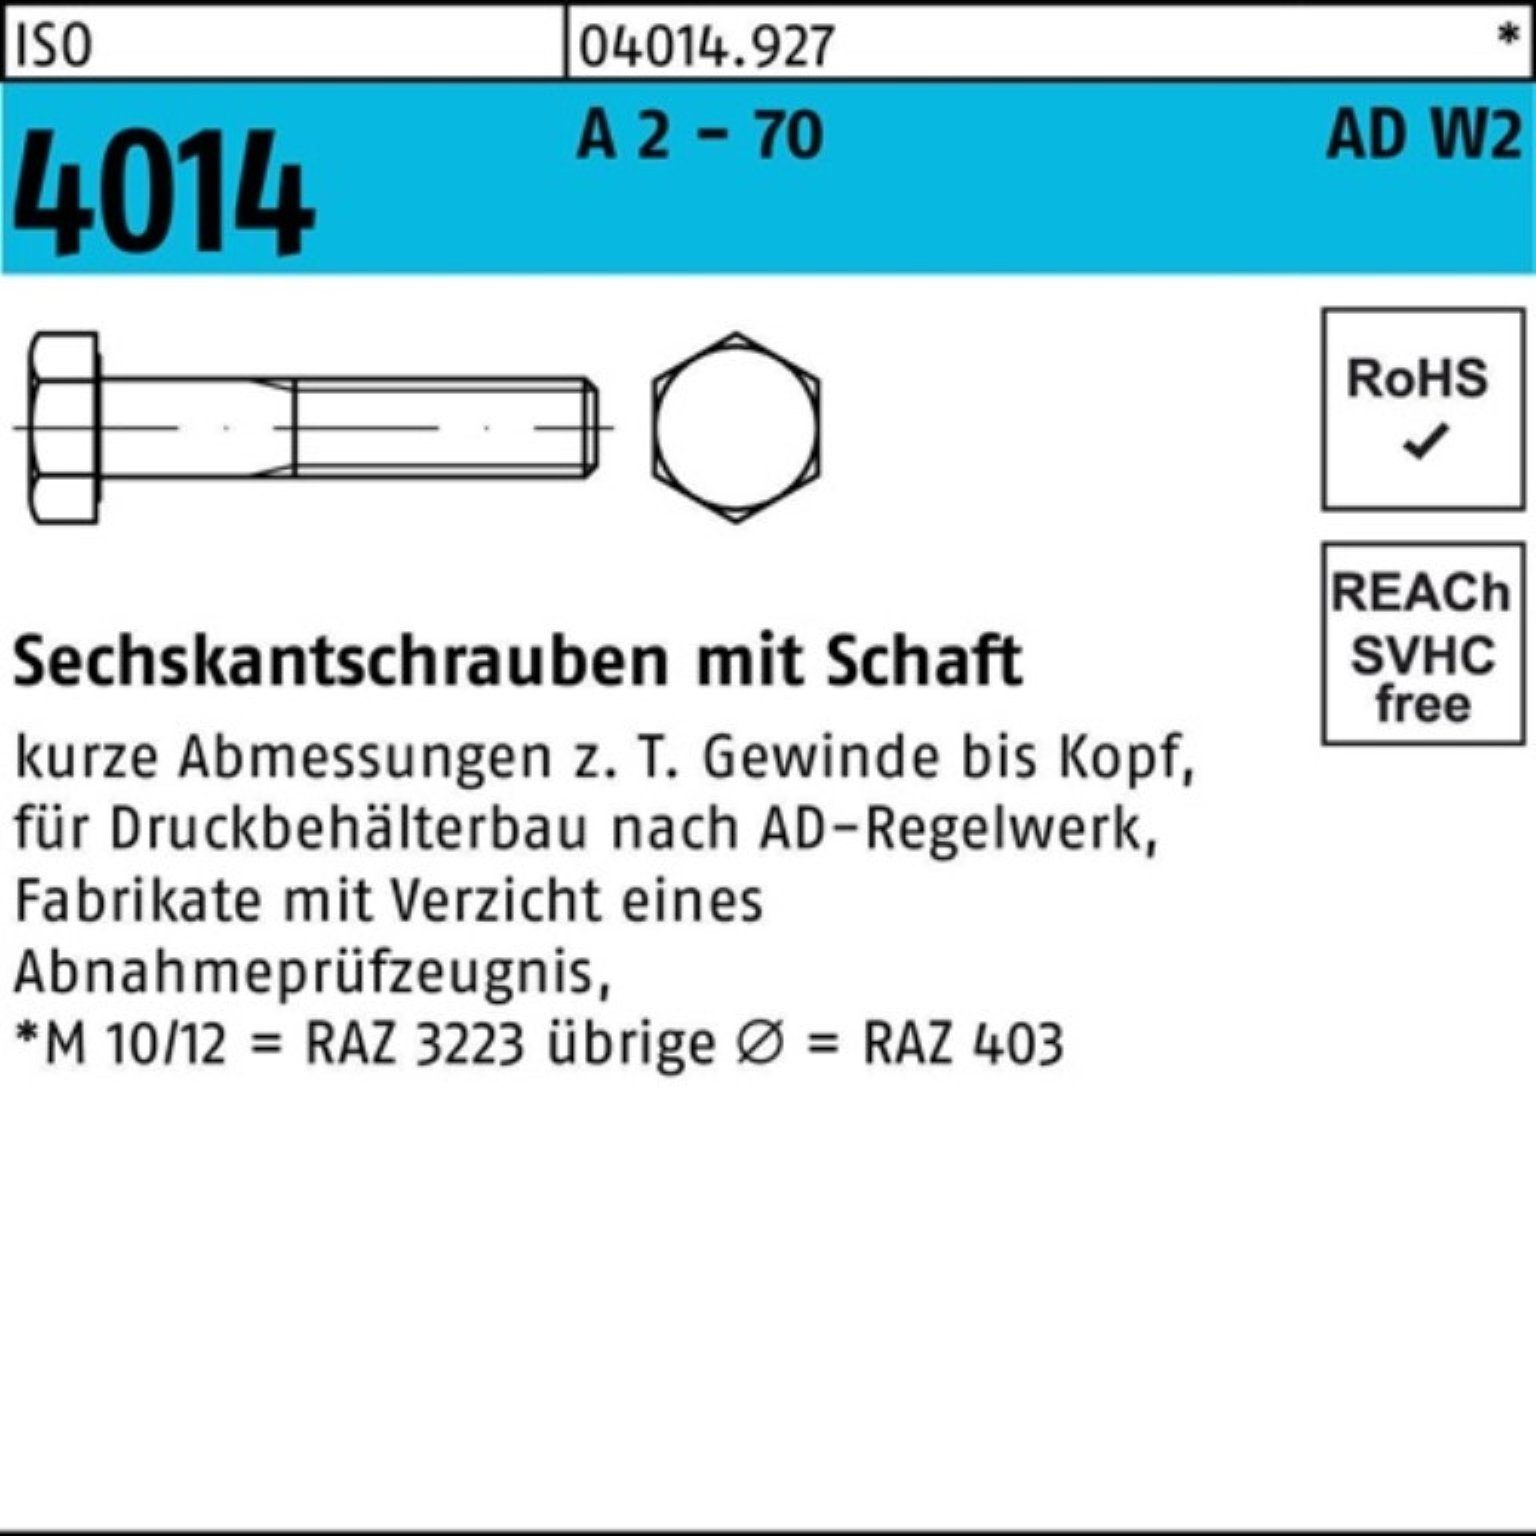 M10x Schaft 100er 4014 - 70 Bufab 2 Sechskantschraube 140 5 AD-W2 A ISO Pack Sechskantschraube